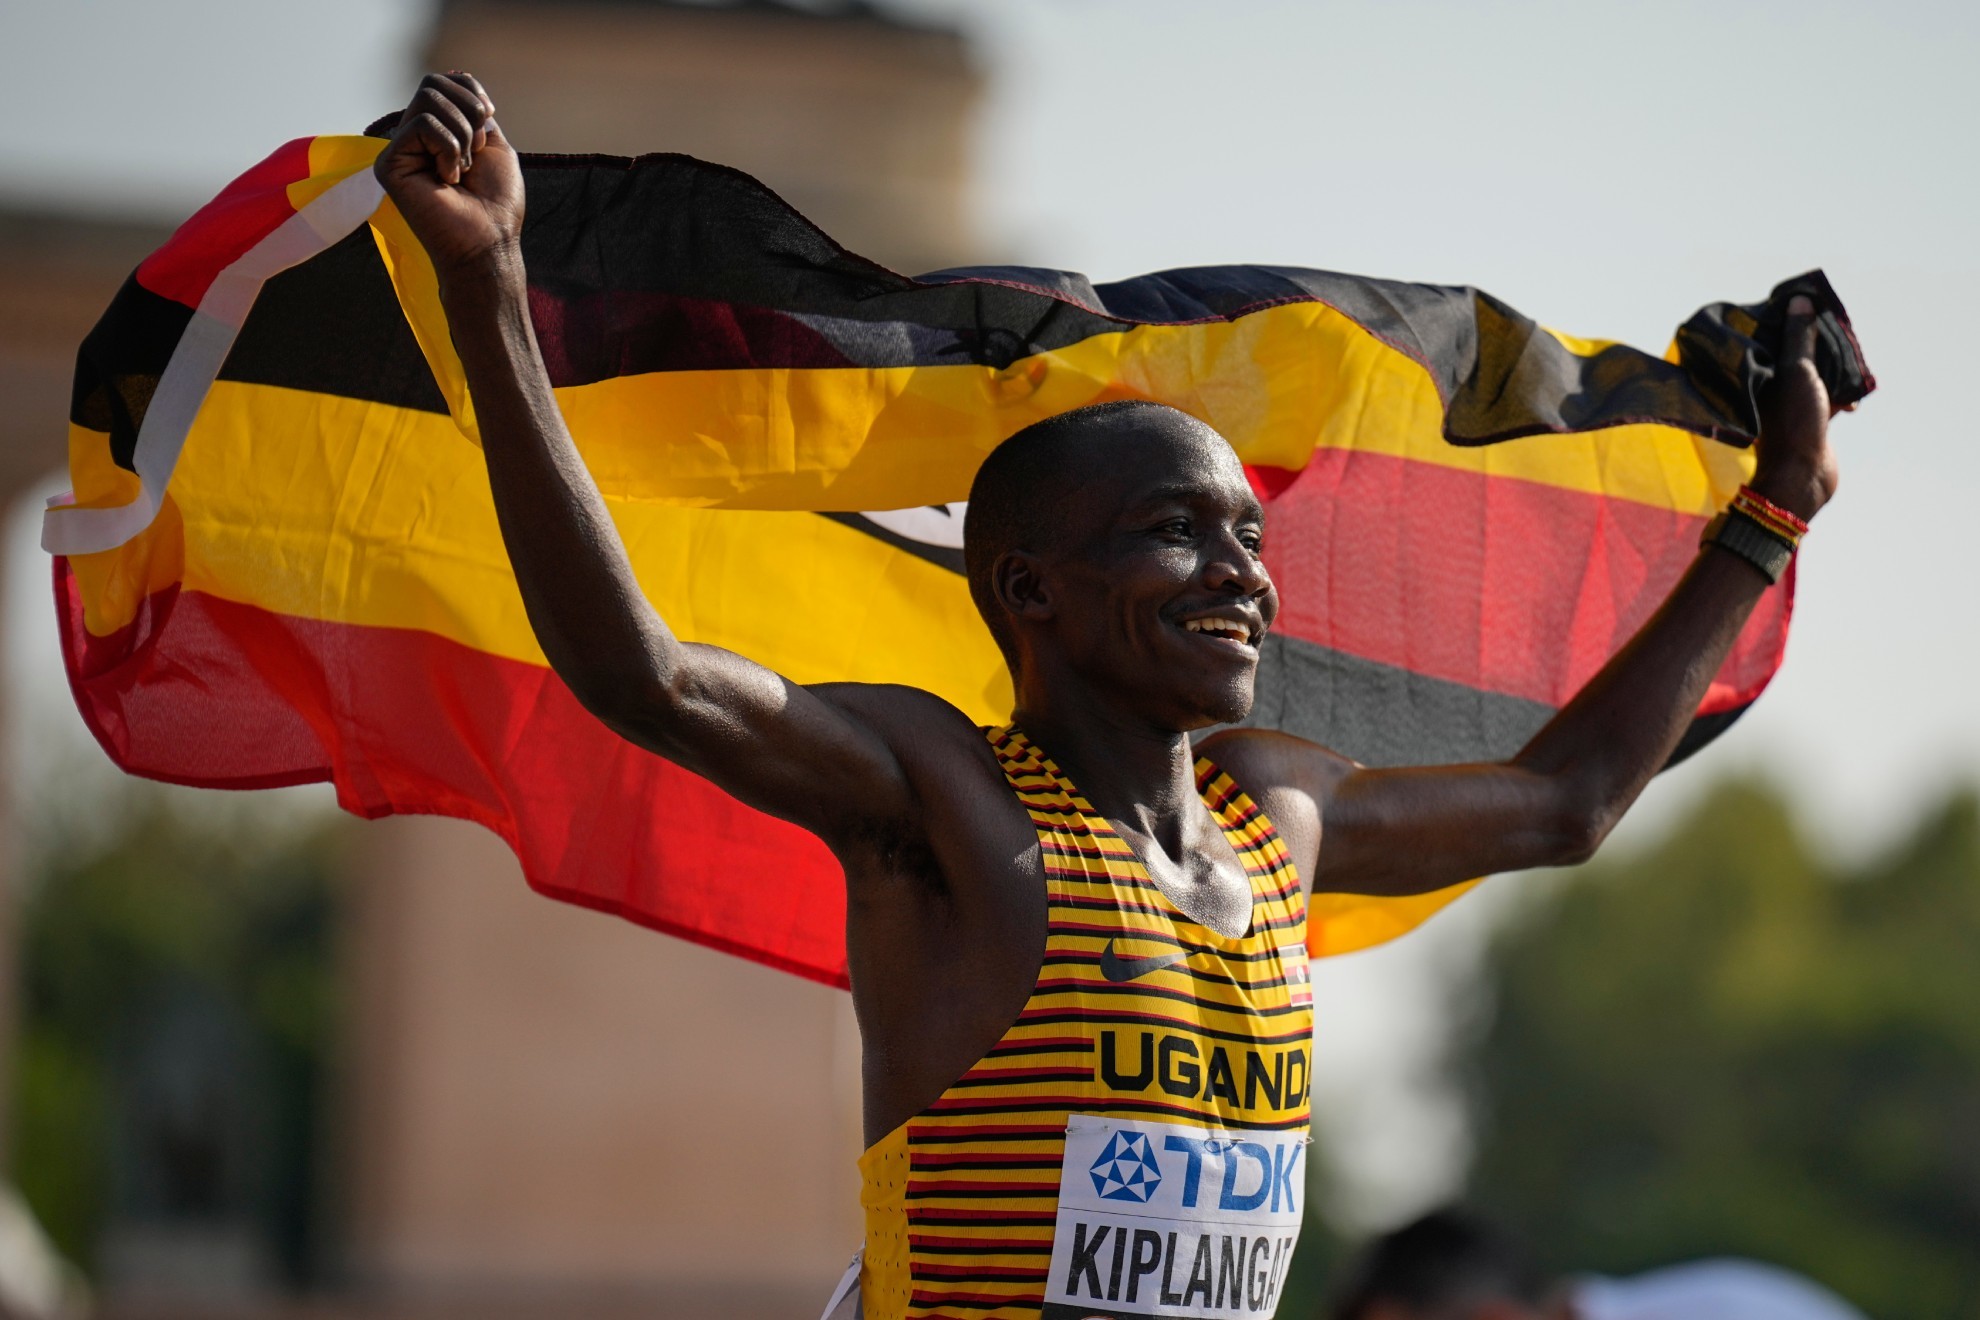 Victor Kiplangat enarbola la bandera de Uganda tras ganar el maratón de los mundiales de Budapest.